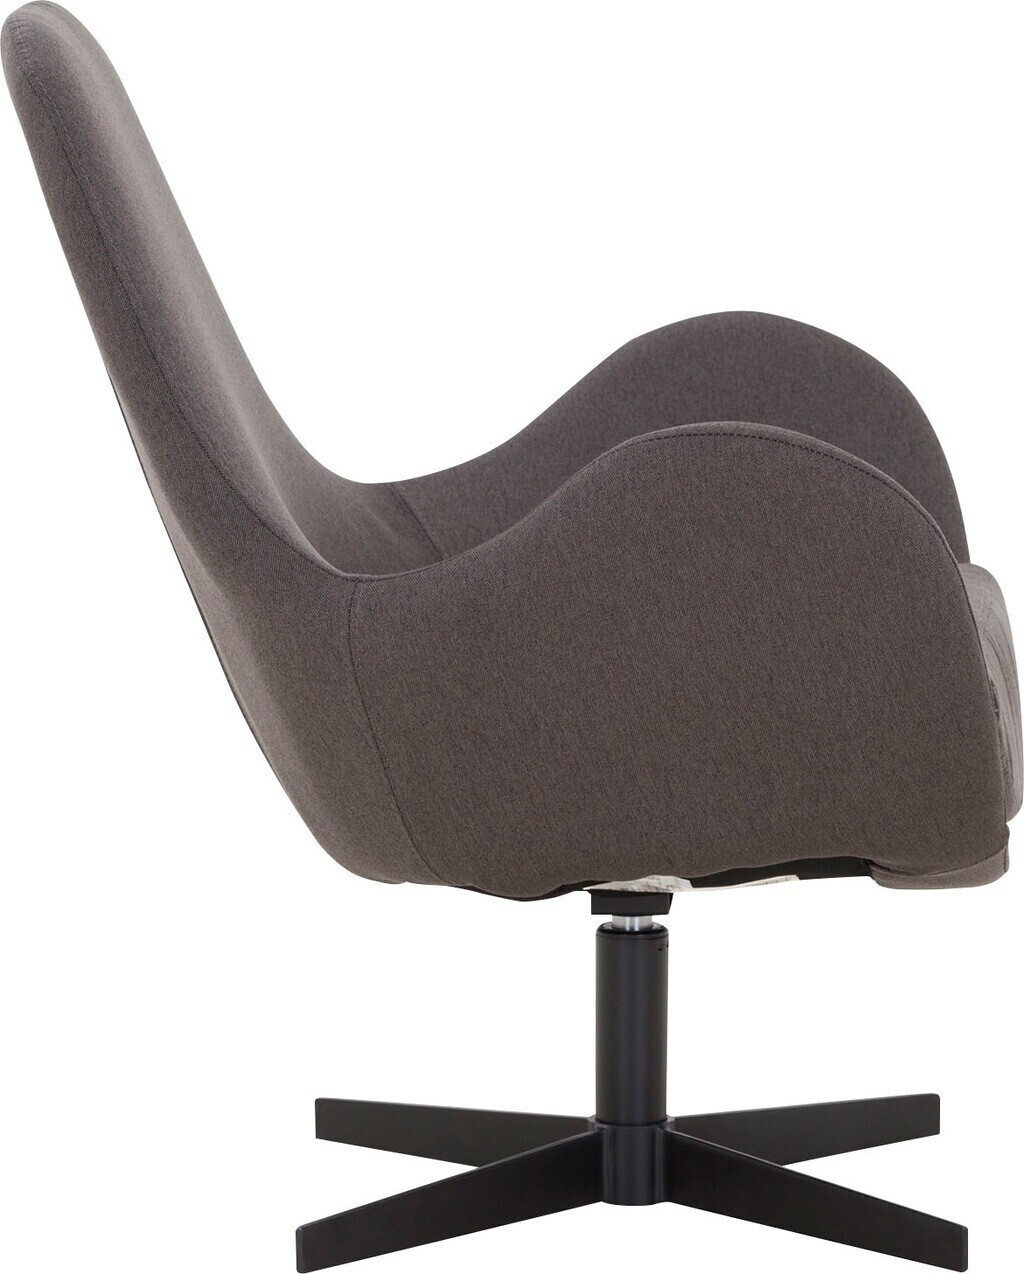 SalesFever Polster-Sessel mit Drehfunktion Textil/Metall 72x69x85cm  dunkelgrau-schwarz (395646) ab 402,94 € | Preisvergleich bei